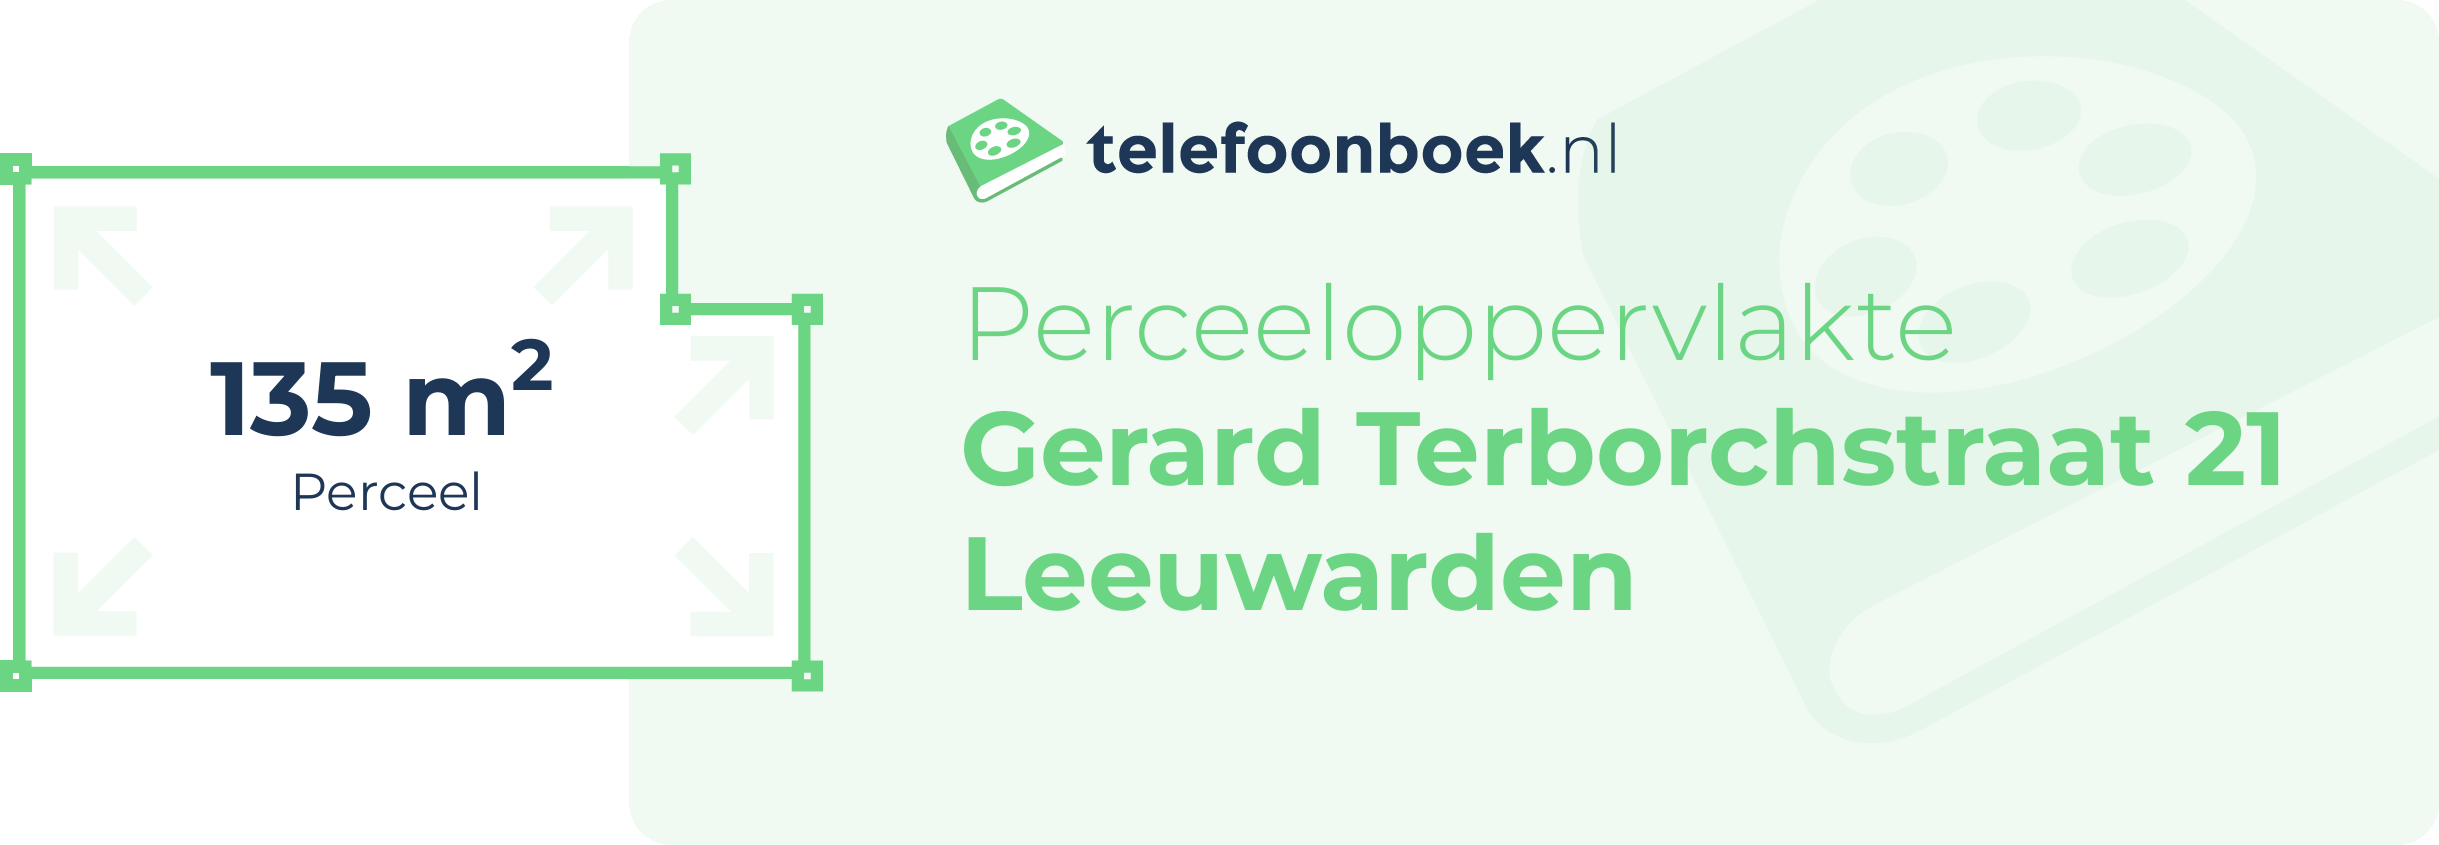 Perceeloppervlakte Gerard Terborchstraat 21 Leeuwarden